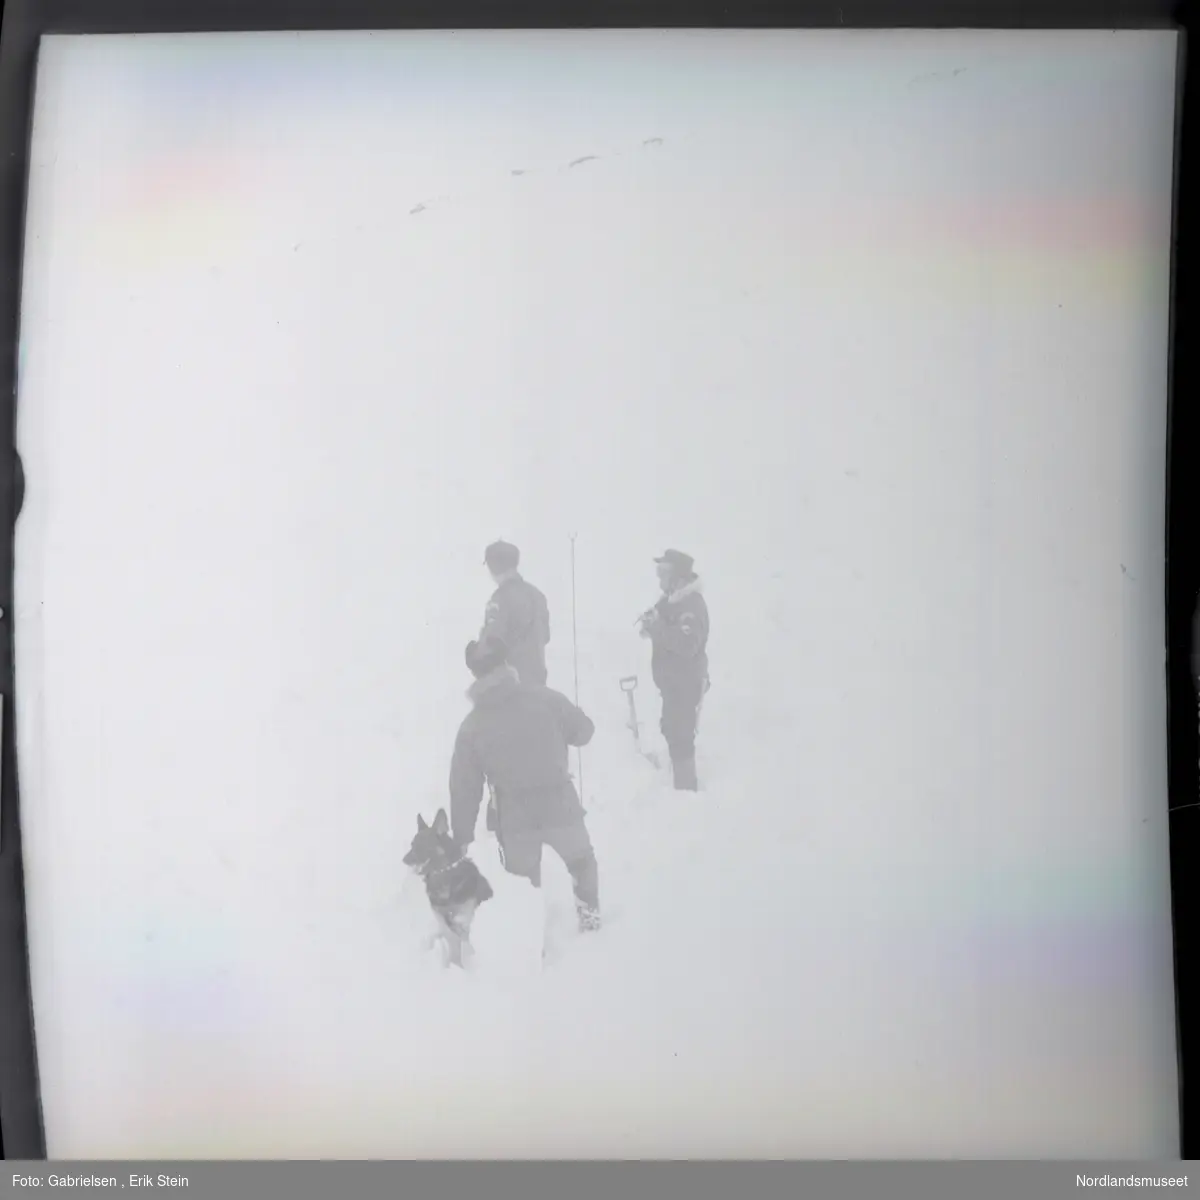 Fotografi av tre menn kledd i vinterklær 
som står i snøen på et fjellområde 
med en hund i en snøstorm på fjellet
og noen berg som stikker opp fra snøen i bakken
over de og en spade som står i snøen som to av mennene
har brukt til noe arbeid i snøen